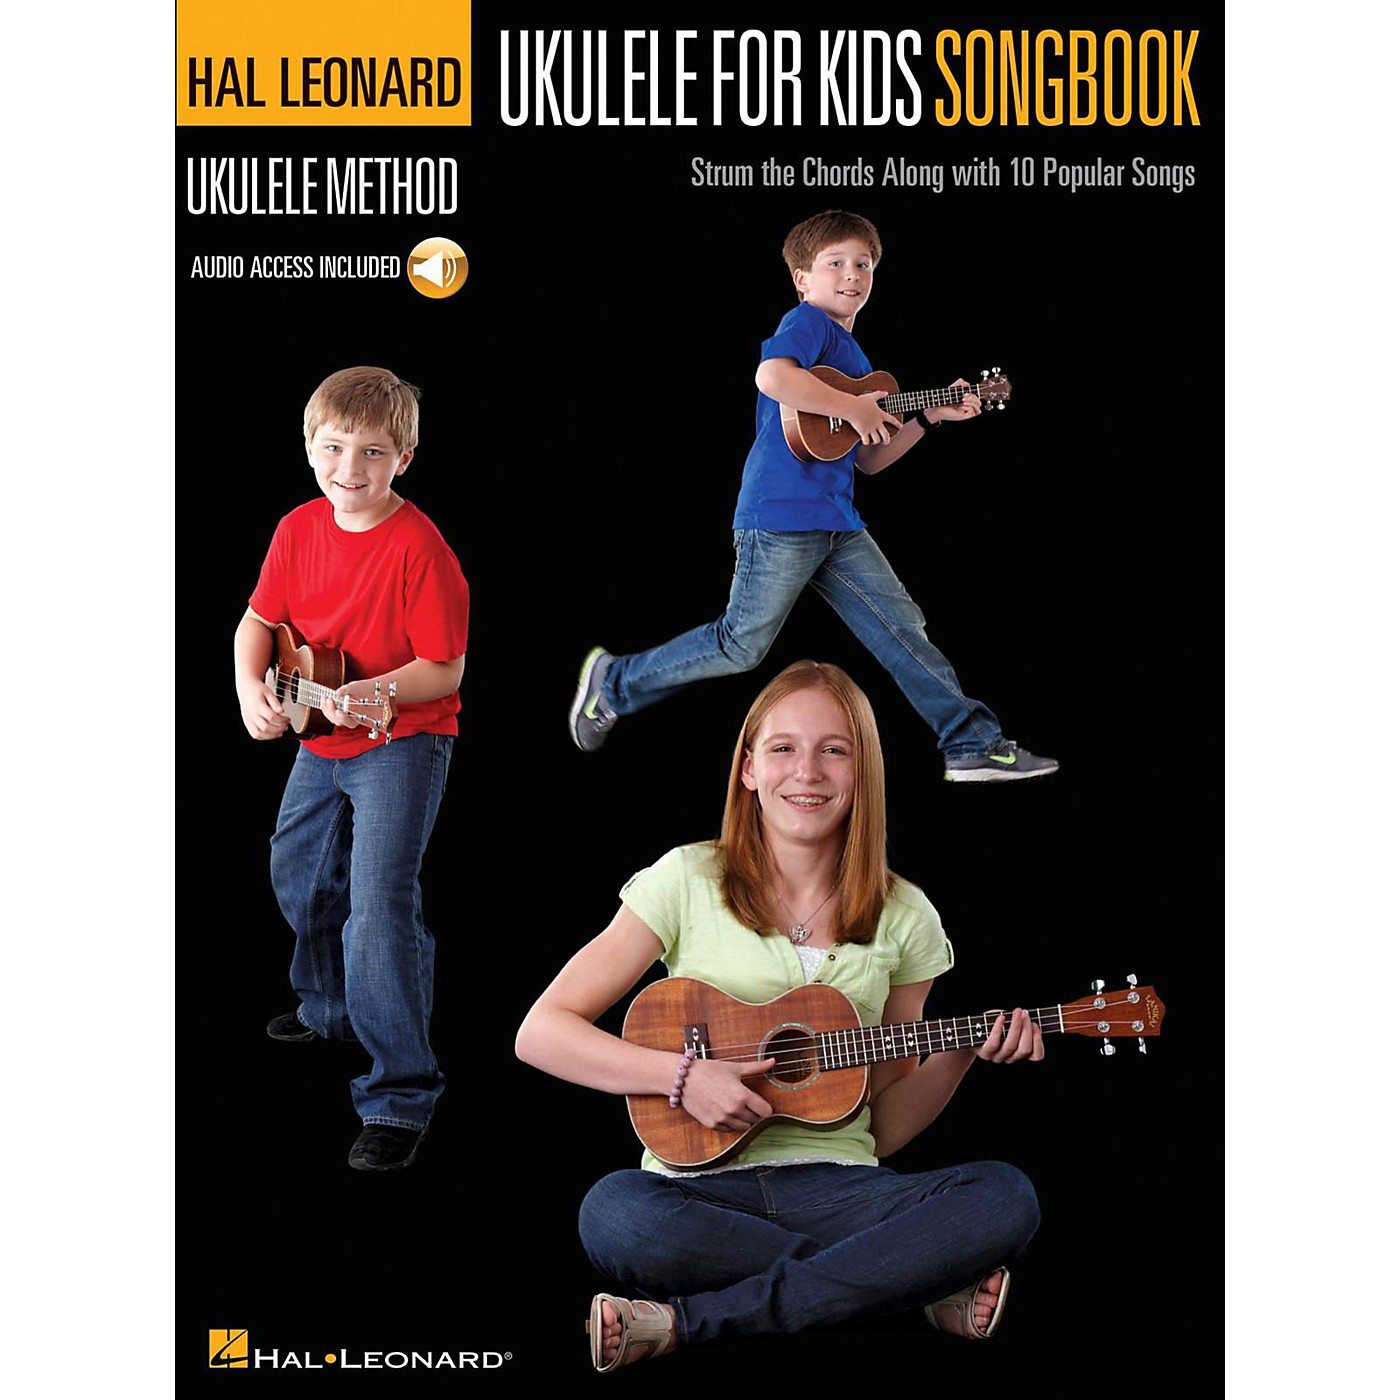 Hal Leonard Ukulele for Kids Songbook - Hal Leonard Ukulele Method Series (Book/Audio Online) thumbnail